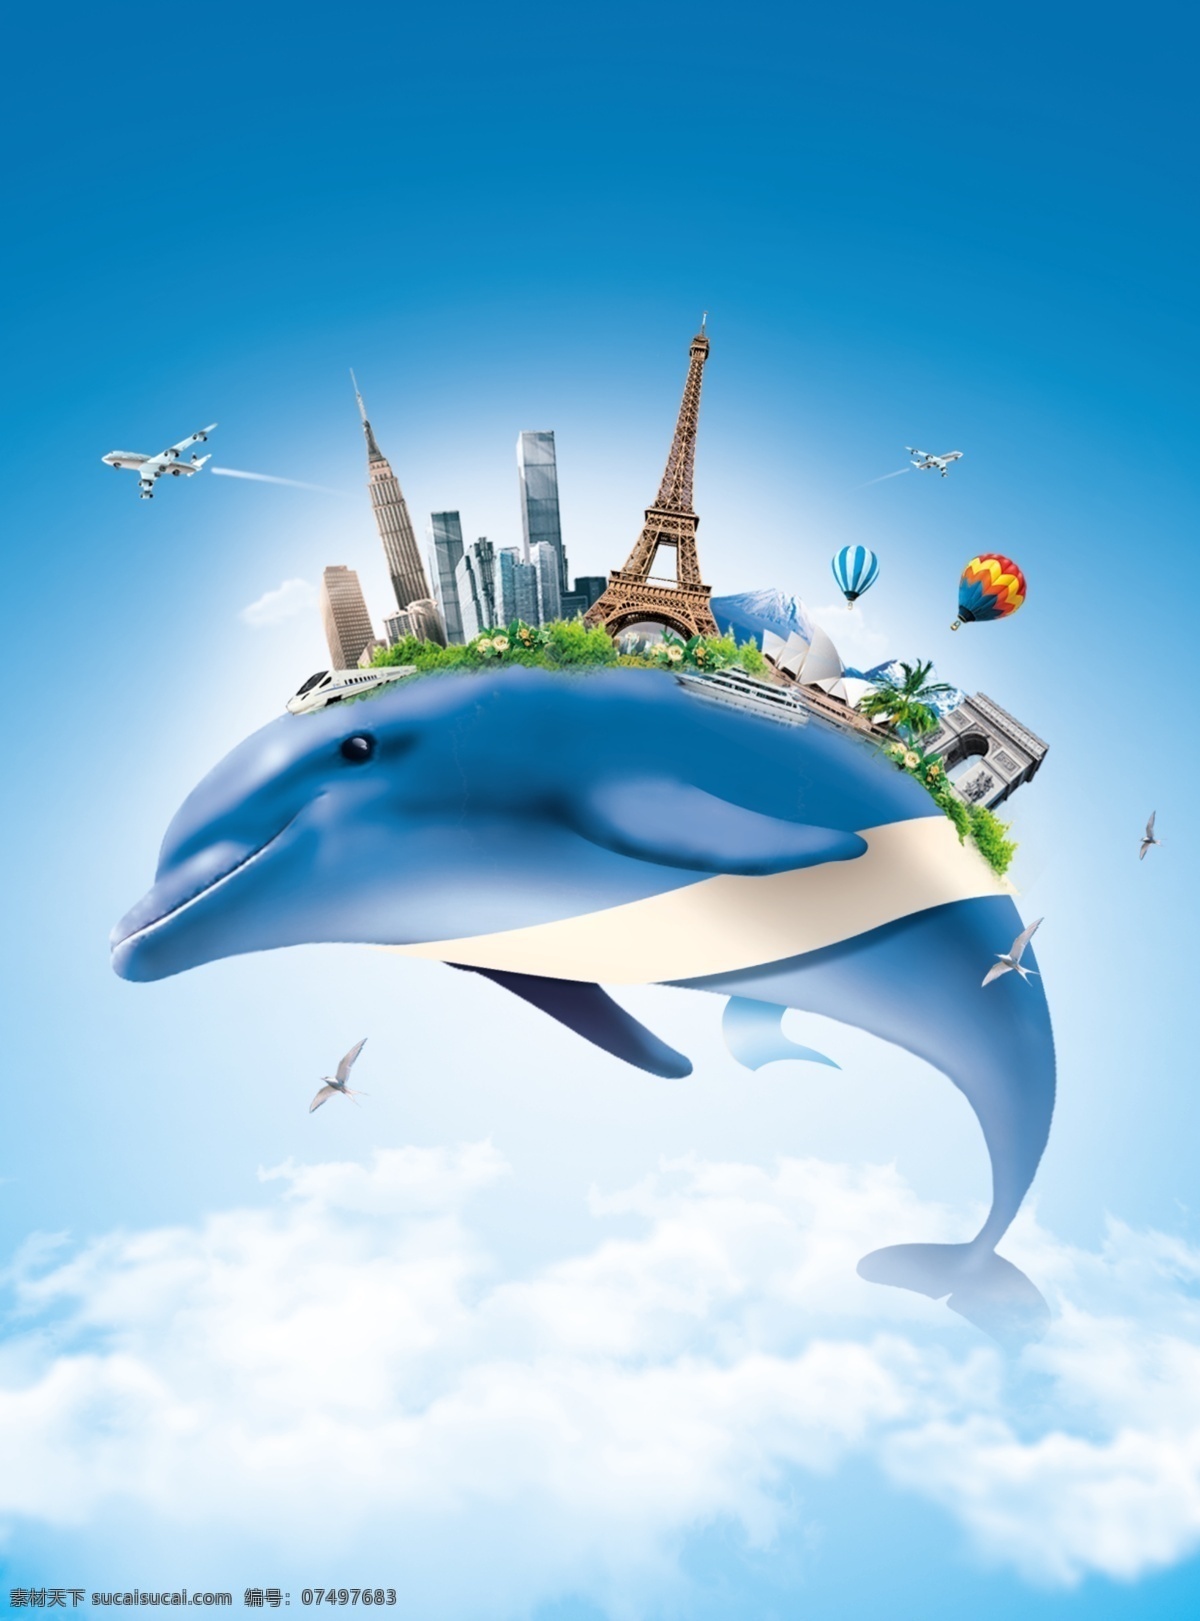 飞行 海豚 城市 广告设计模板 海陆空 蓝天 世界建筑 源文件 飞行的海豚 云海